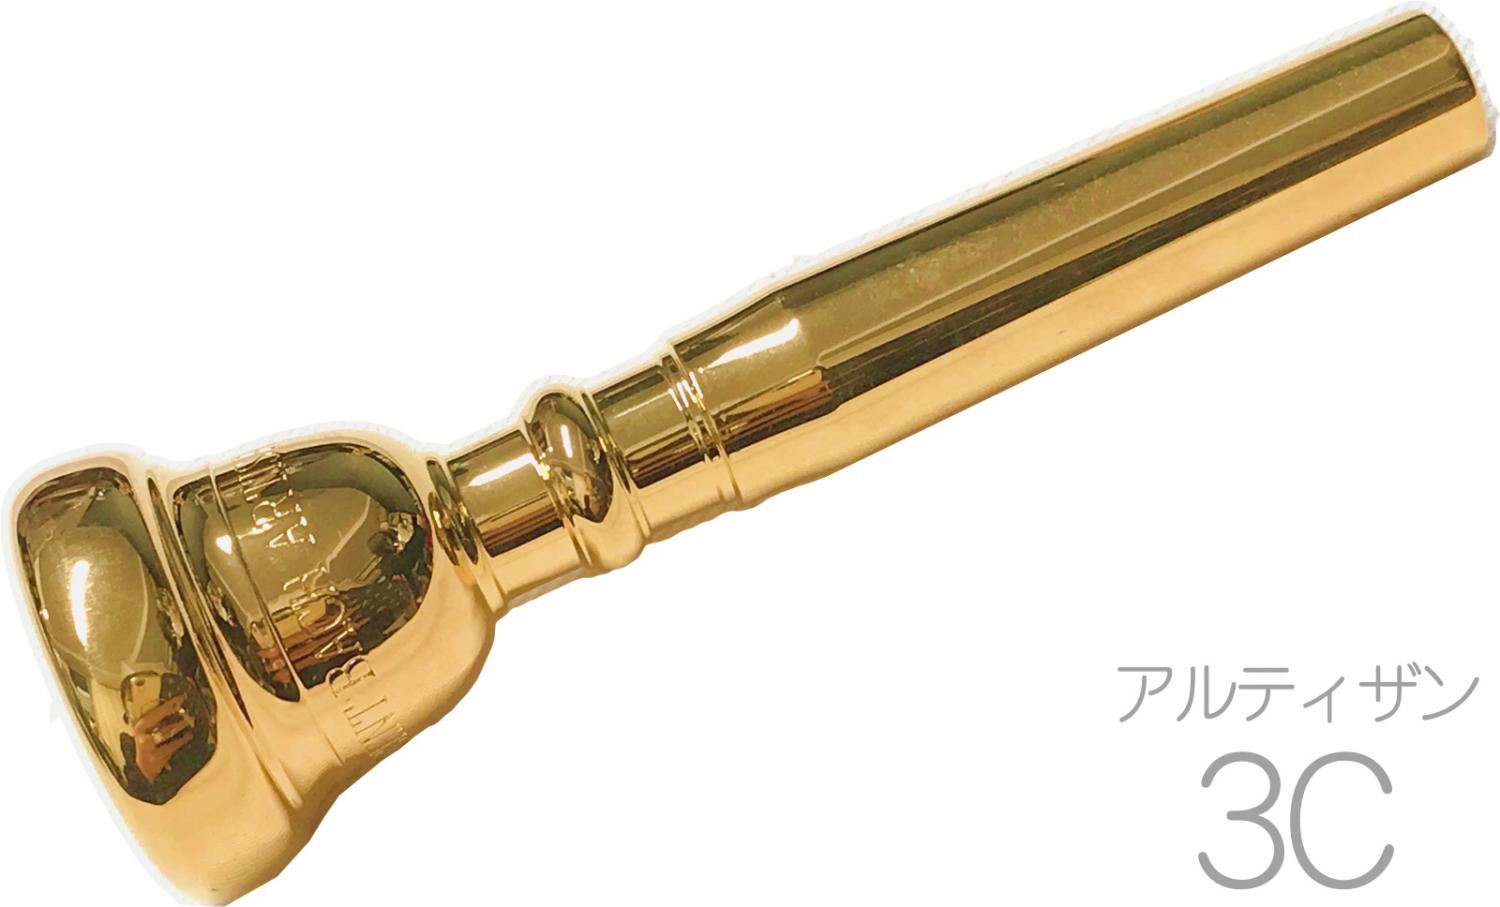 0円 最大89%OFFクーポン Vincent Bach ヴィンセント バック 5MV トランペット用 マウスピース GP 金メッキ スタンダード 金管 トランペットマウスピース 金属製 モデル No.5MV TR-5MV-GP trumpet mouthpiece